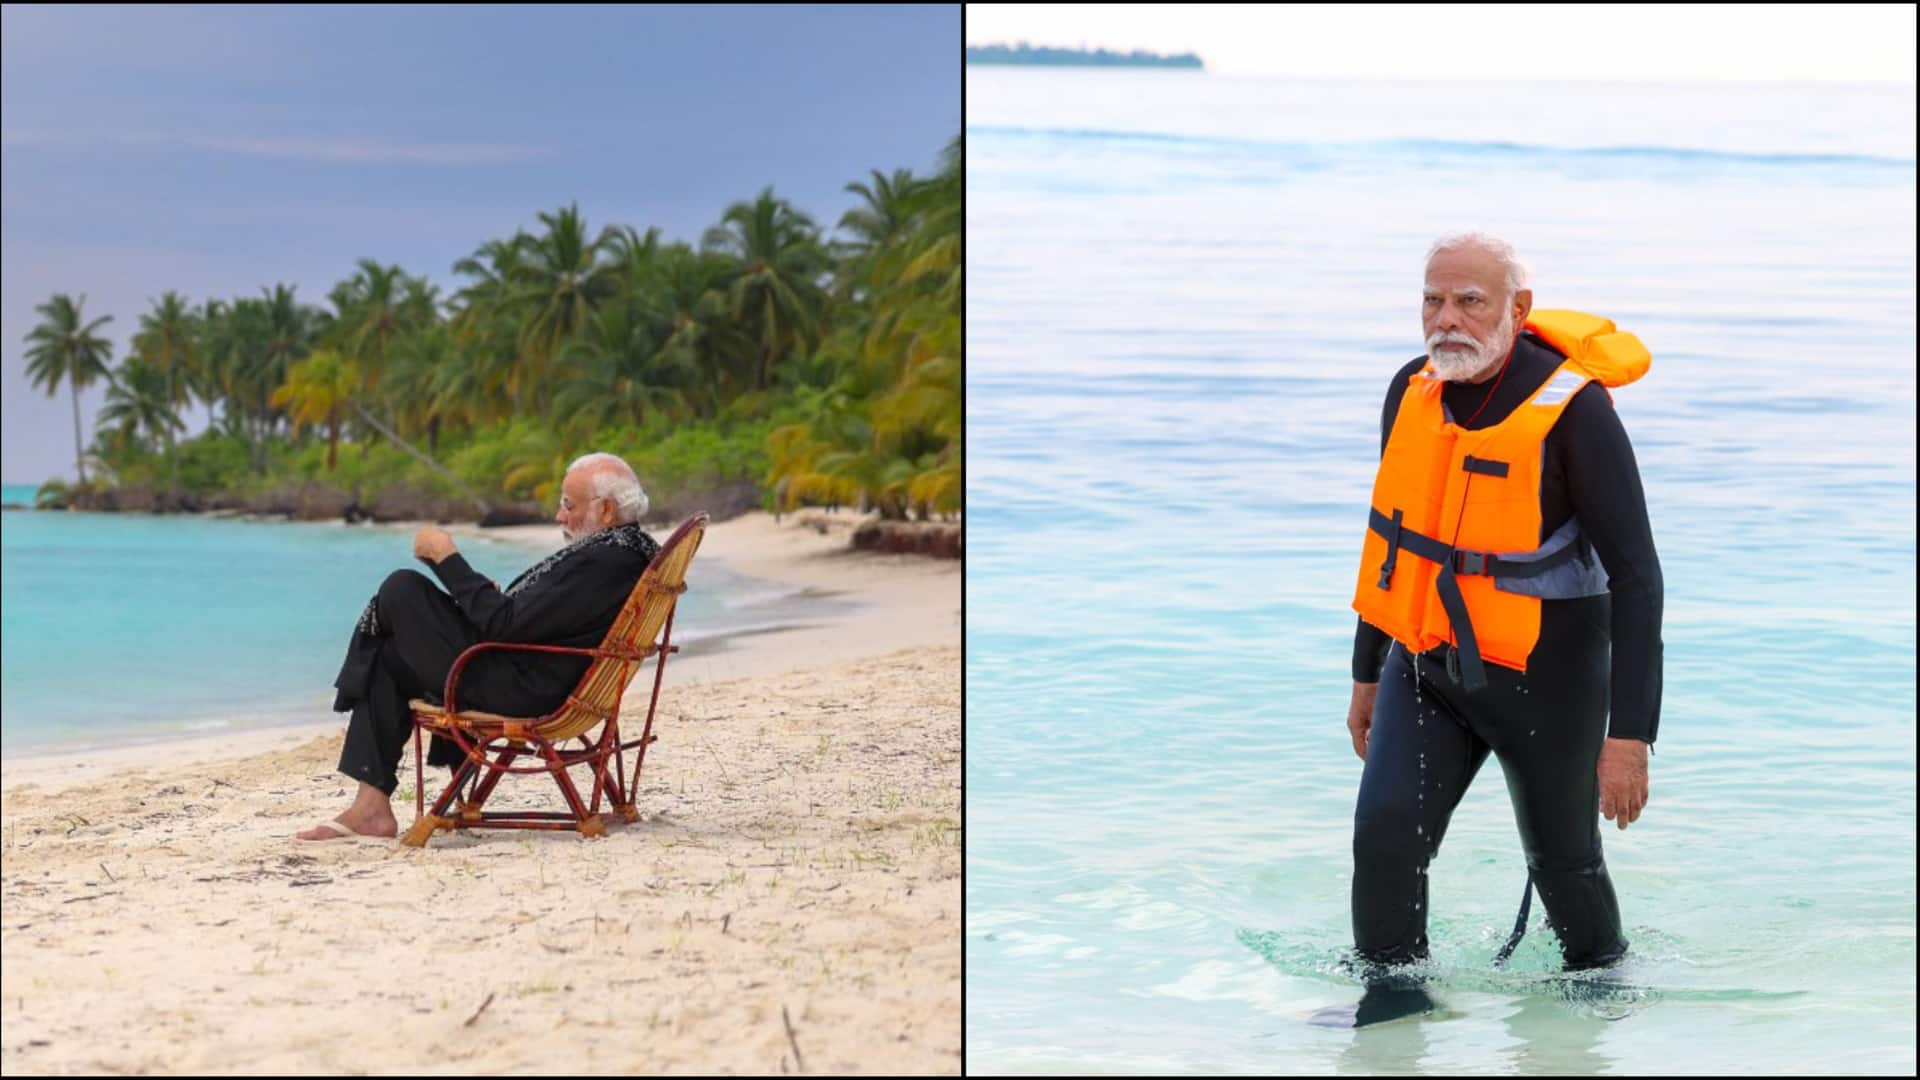 प्रधानमंत्री मोदी की यात्रा के बाद बदली लक्षद्वीप में पर्यटन की तस्वीर, बढ़ी पर्यटकों की संख्या